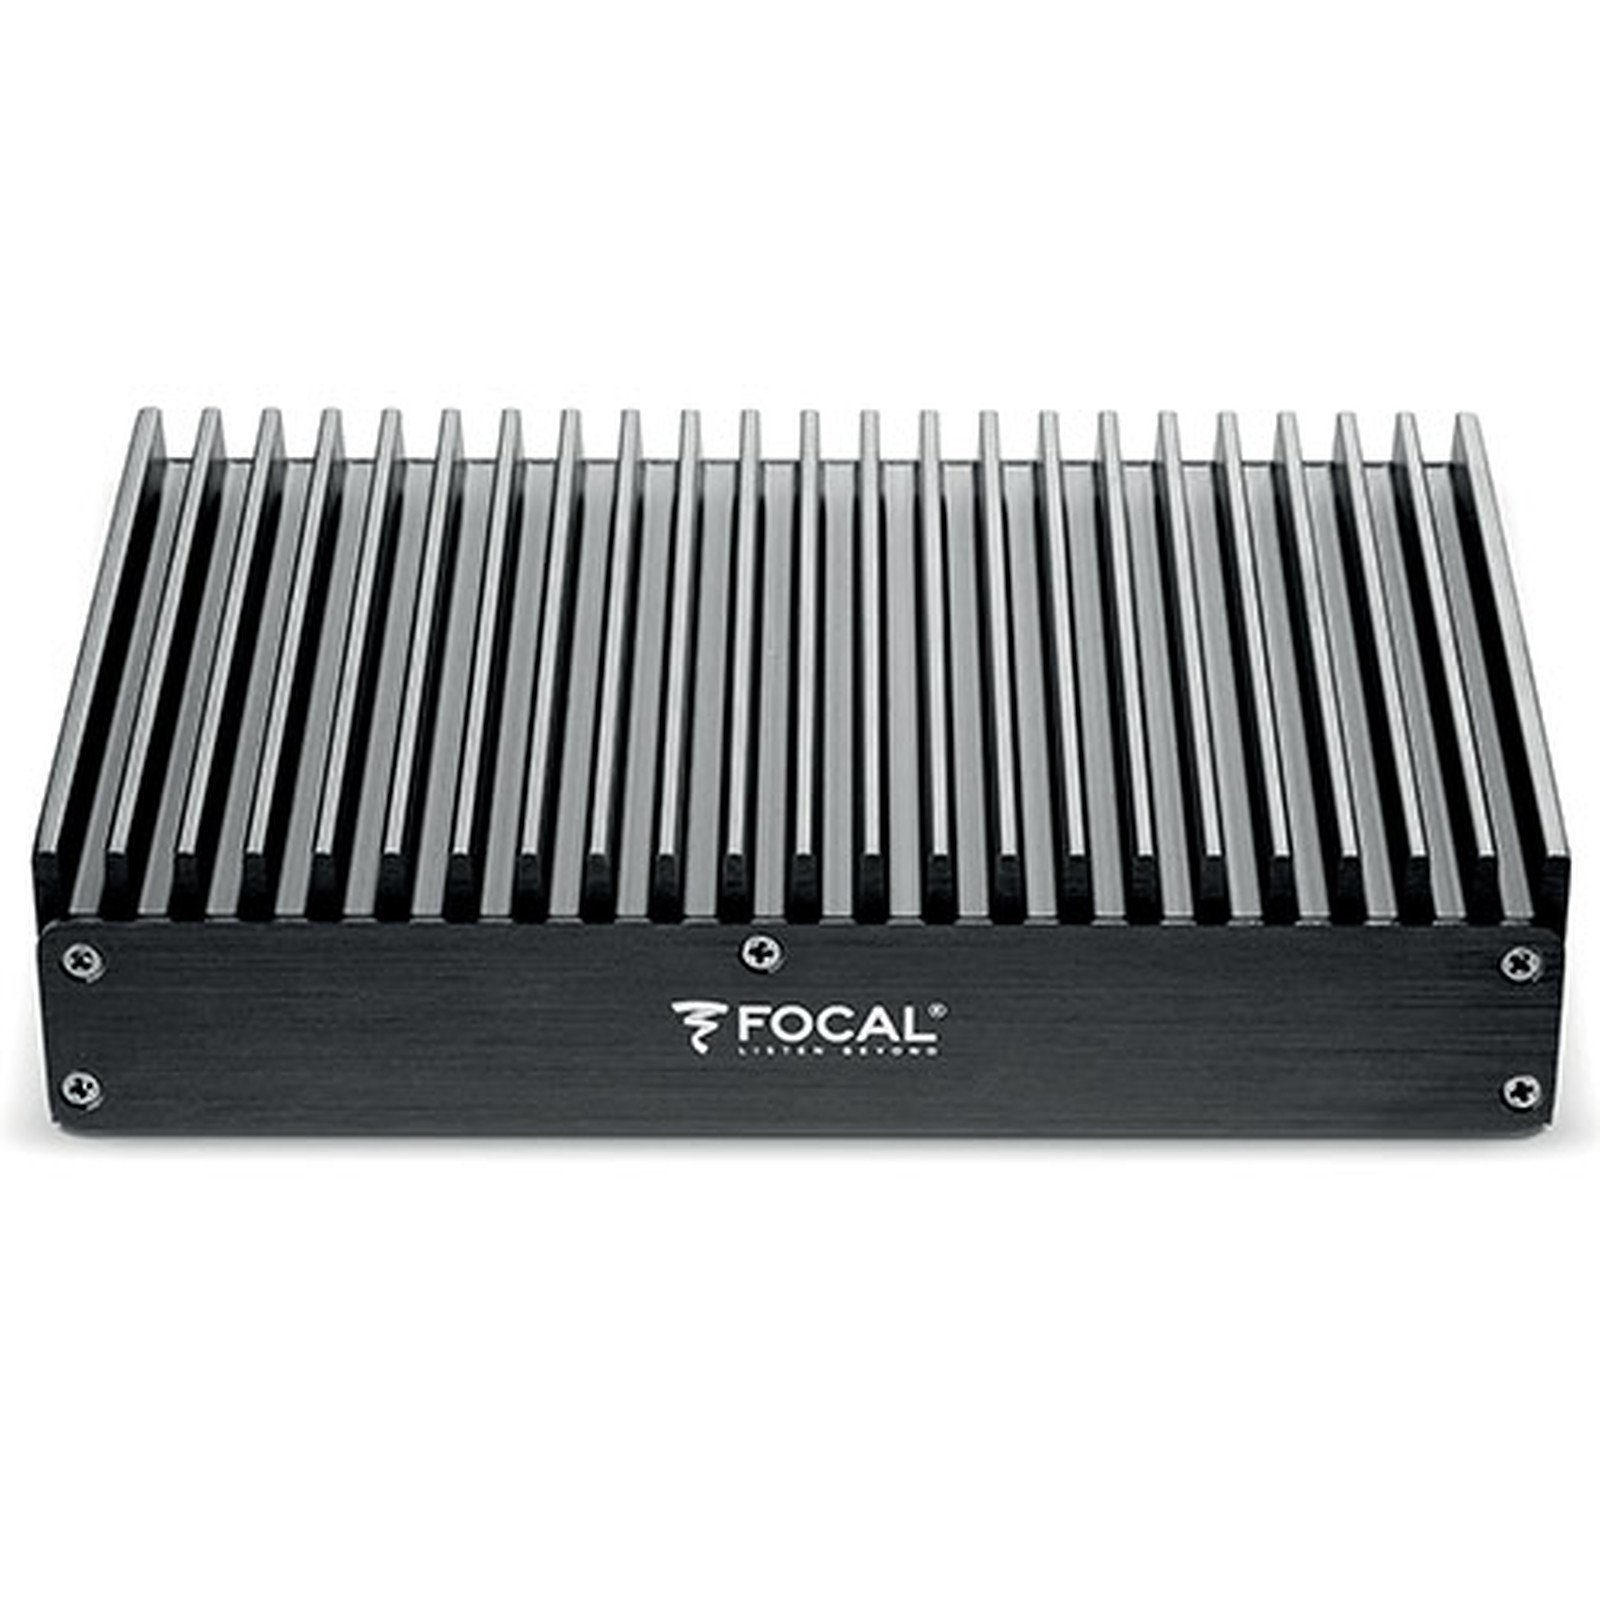 FOCAL FIT 9.660 9-Kanal Endstufe / Verstärker mit DSP Verstärker